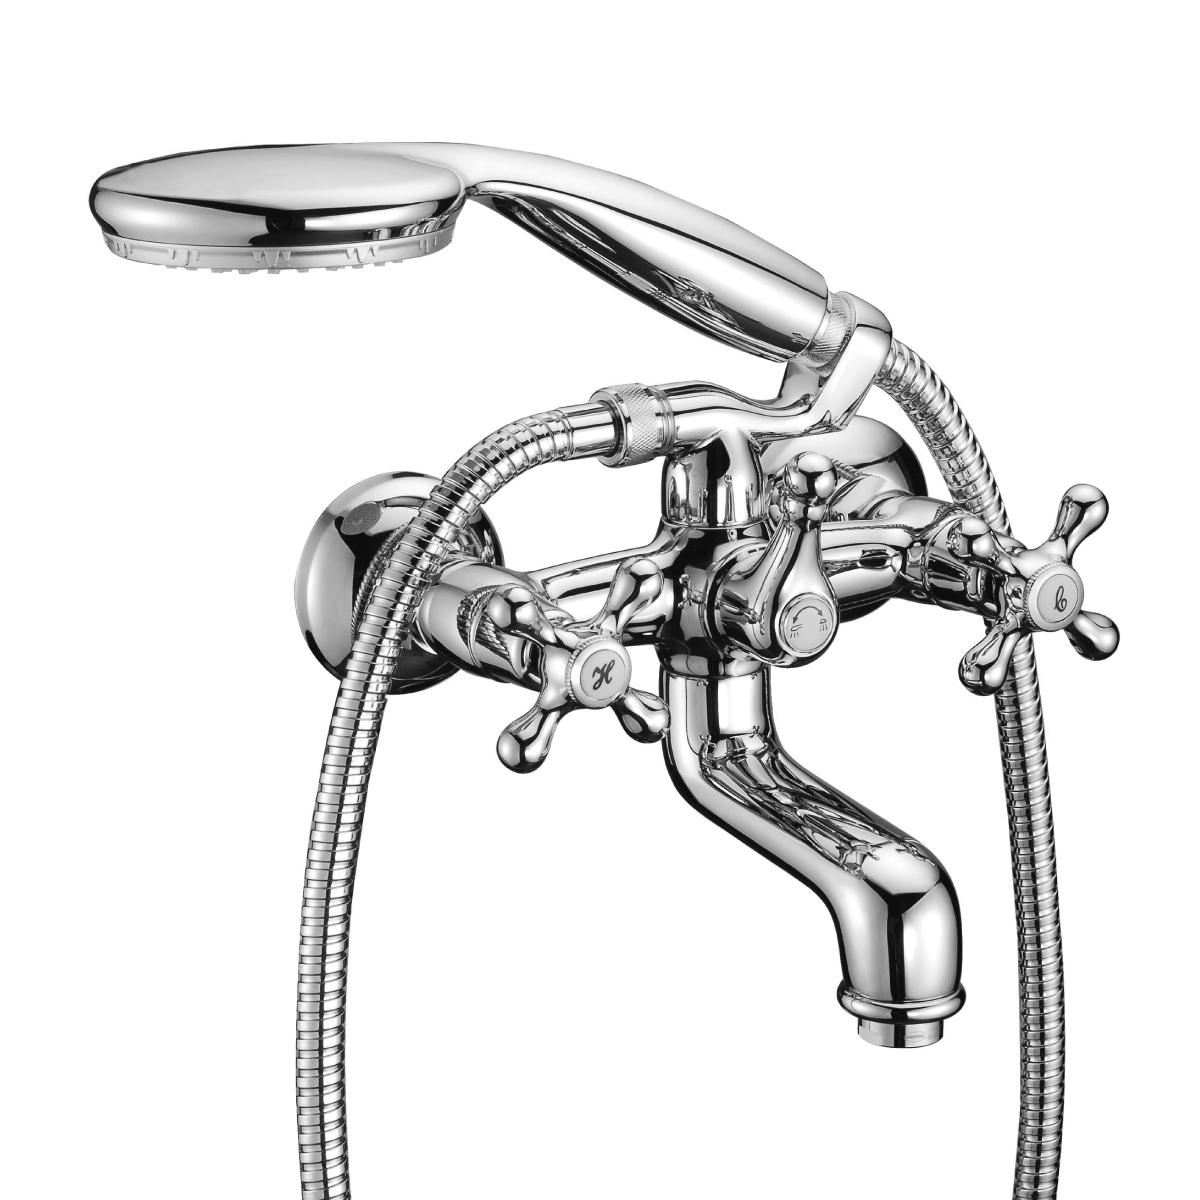 LM2102C Bath faucet with non-swivel spout